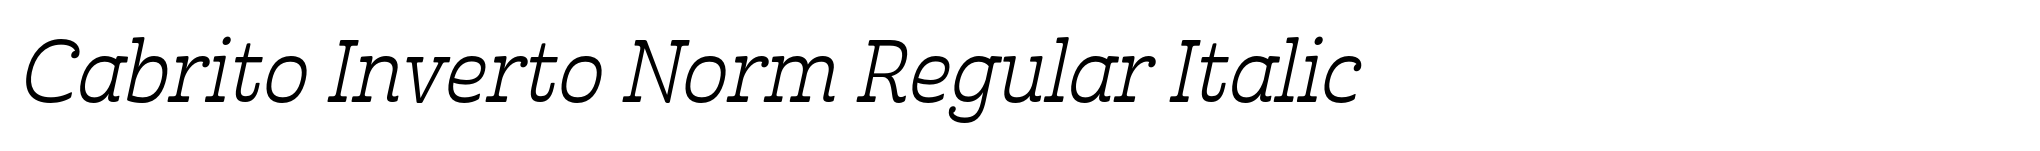 Cabrito Inverto Norm Regular Italic image